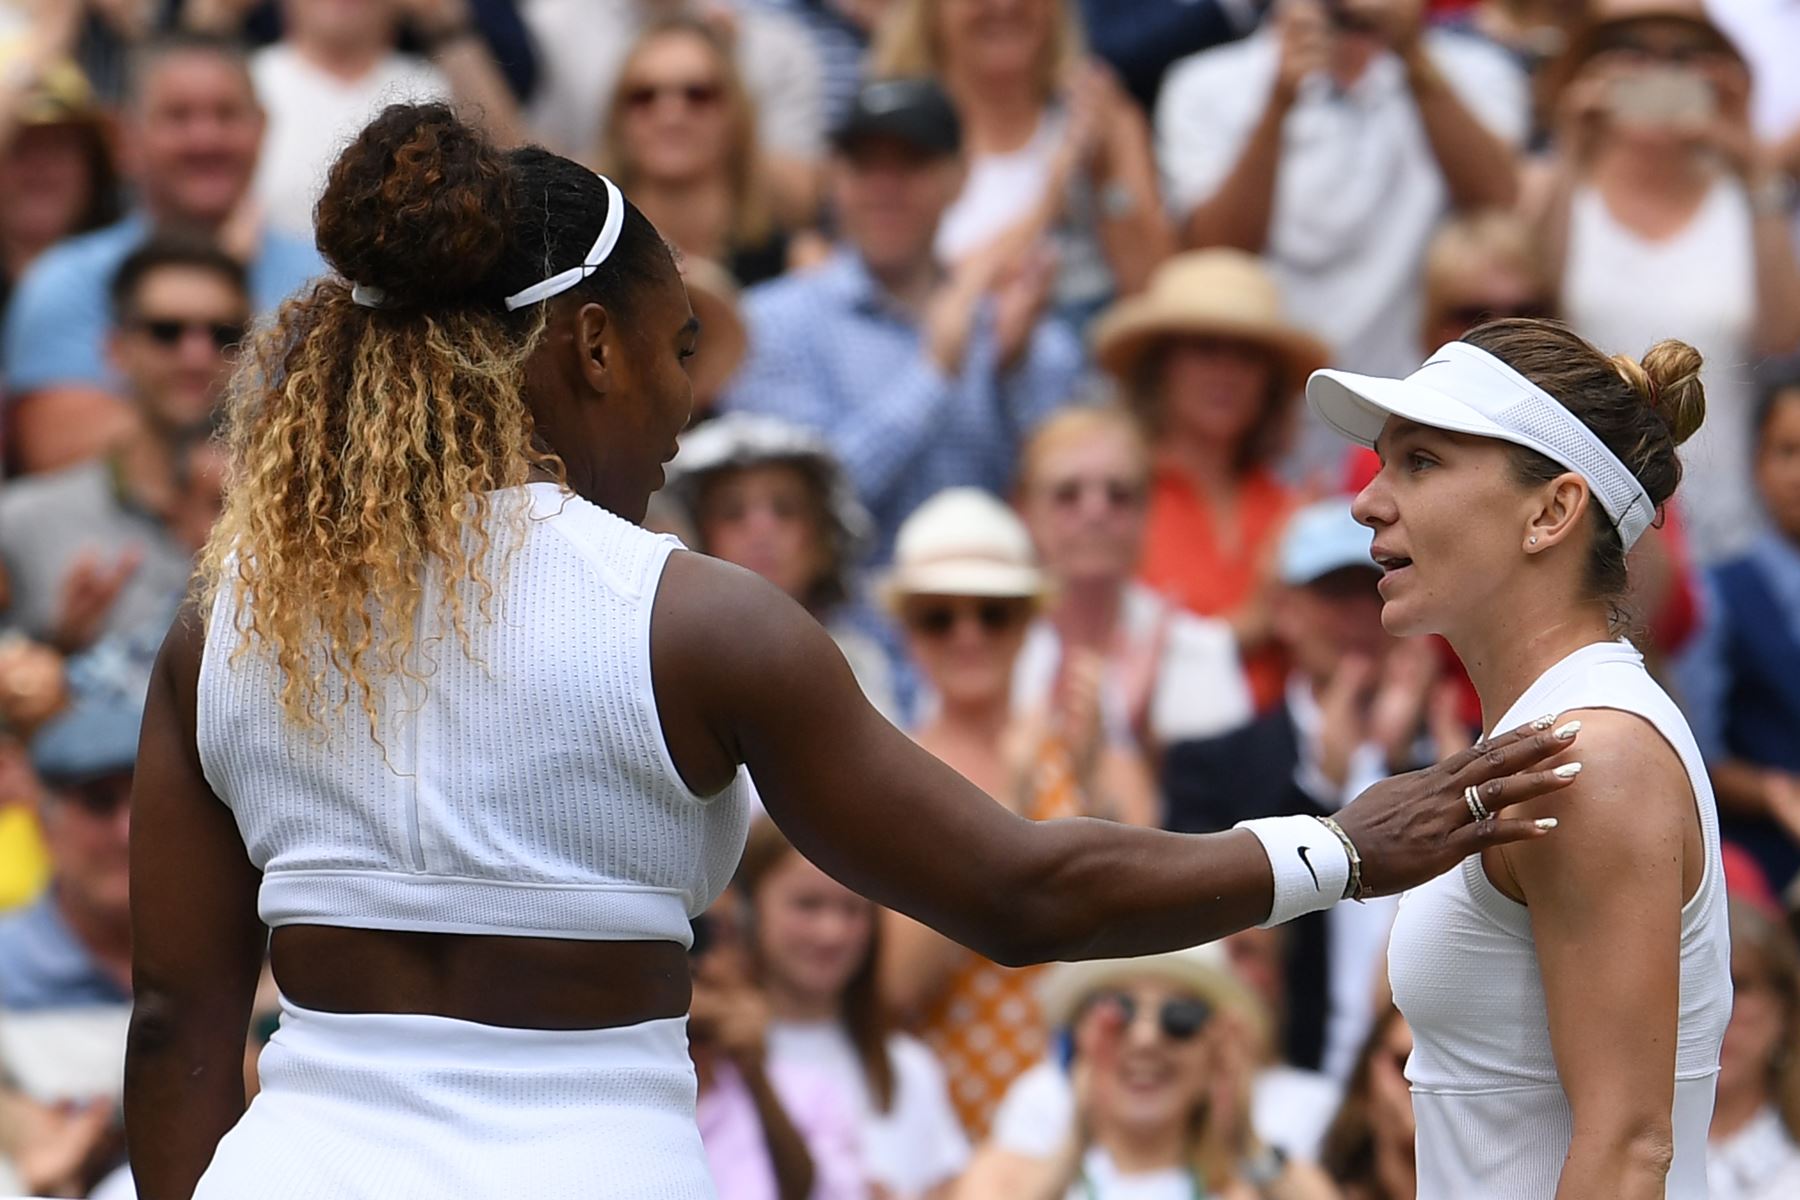 La rumana Simona Halep (R) le da la mano a la jugadora estadounidense Serena Williams (L) después de que Halep ganara la final de sus singles femeninas el día doce del Campeonato de Wimbledon 2019.
Foto:AFP